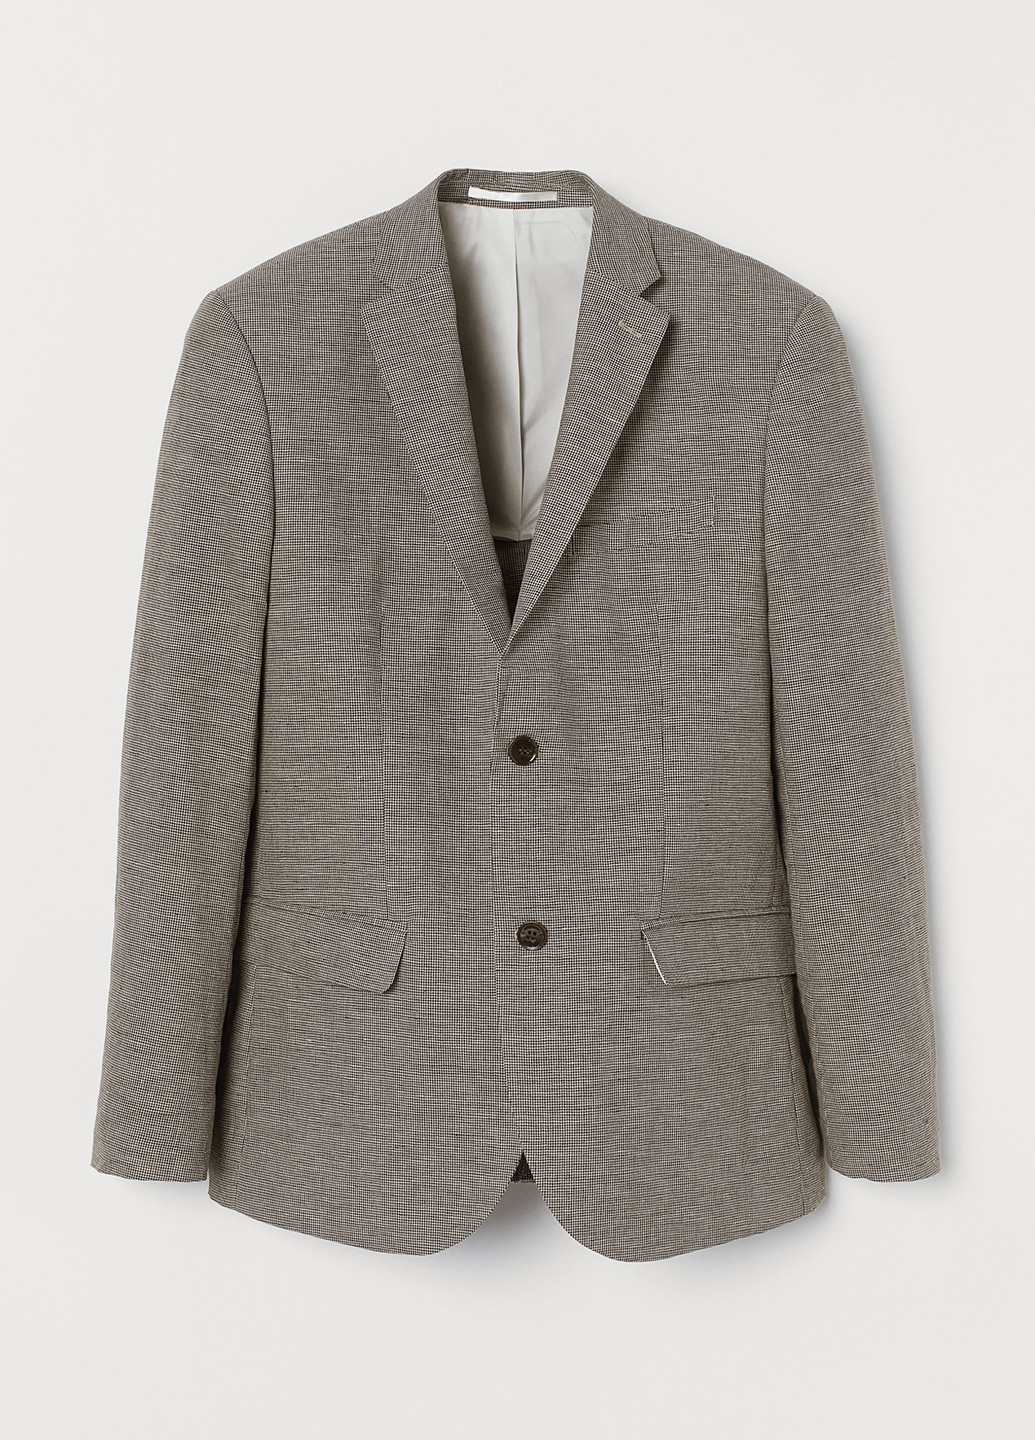 Пиджак H&M однобортный геометрический серый деловой лен, хлопок, костюмная